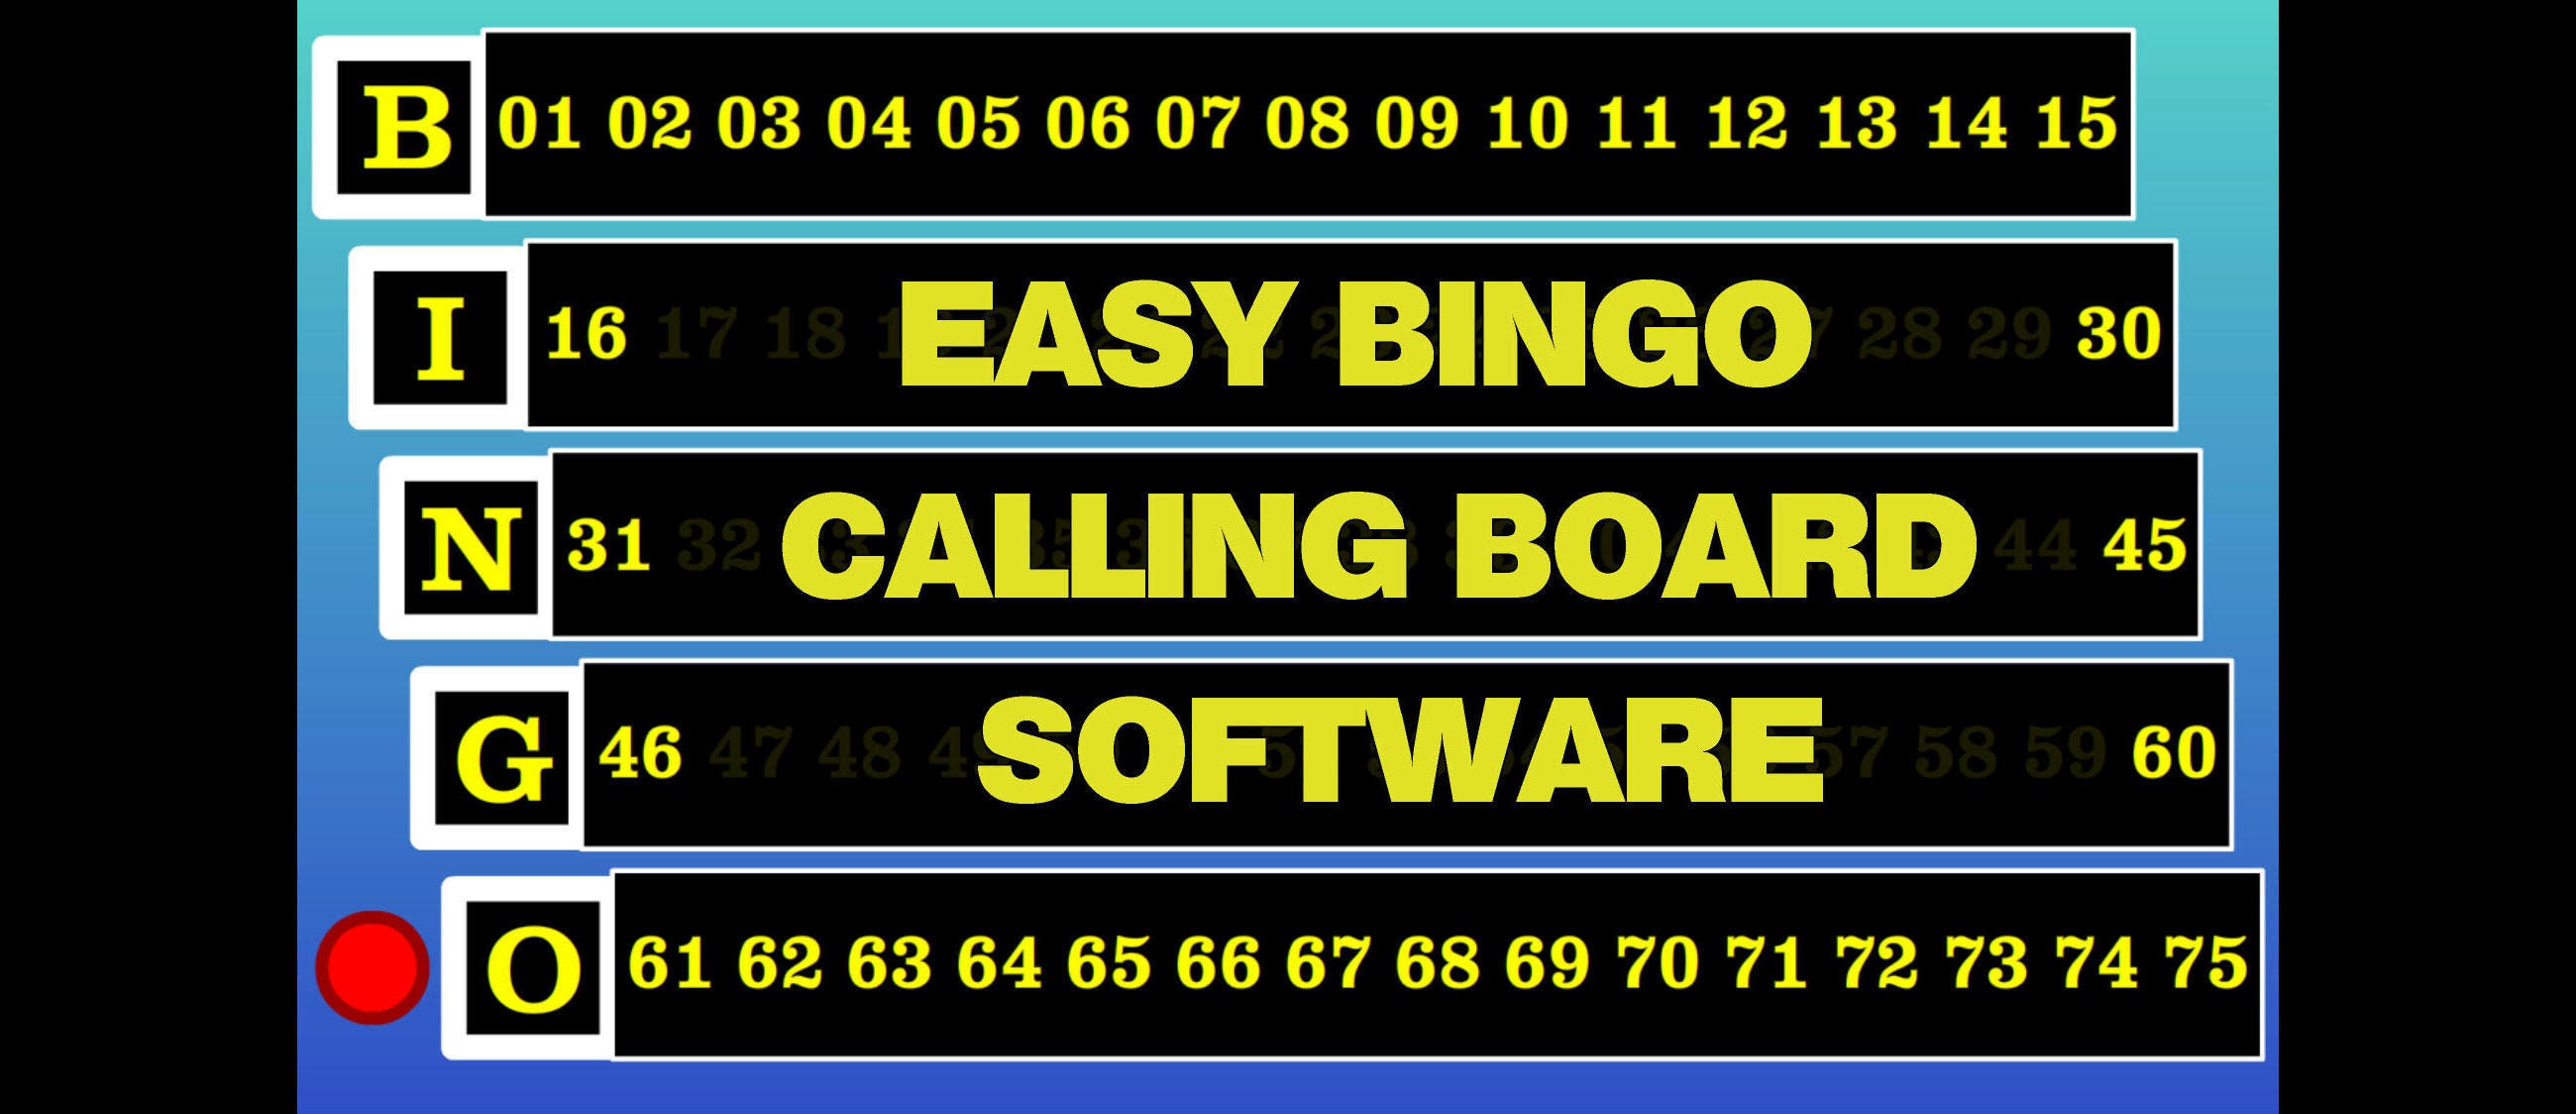 Bingo Software Bingo Calling SOFTWARE EMULATING Machine,Personalized for You 